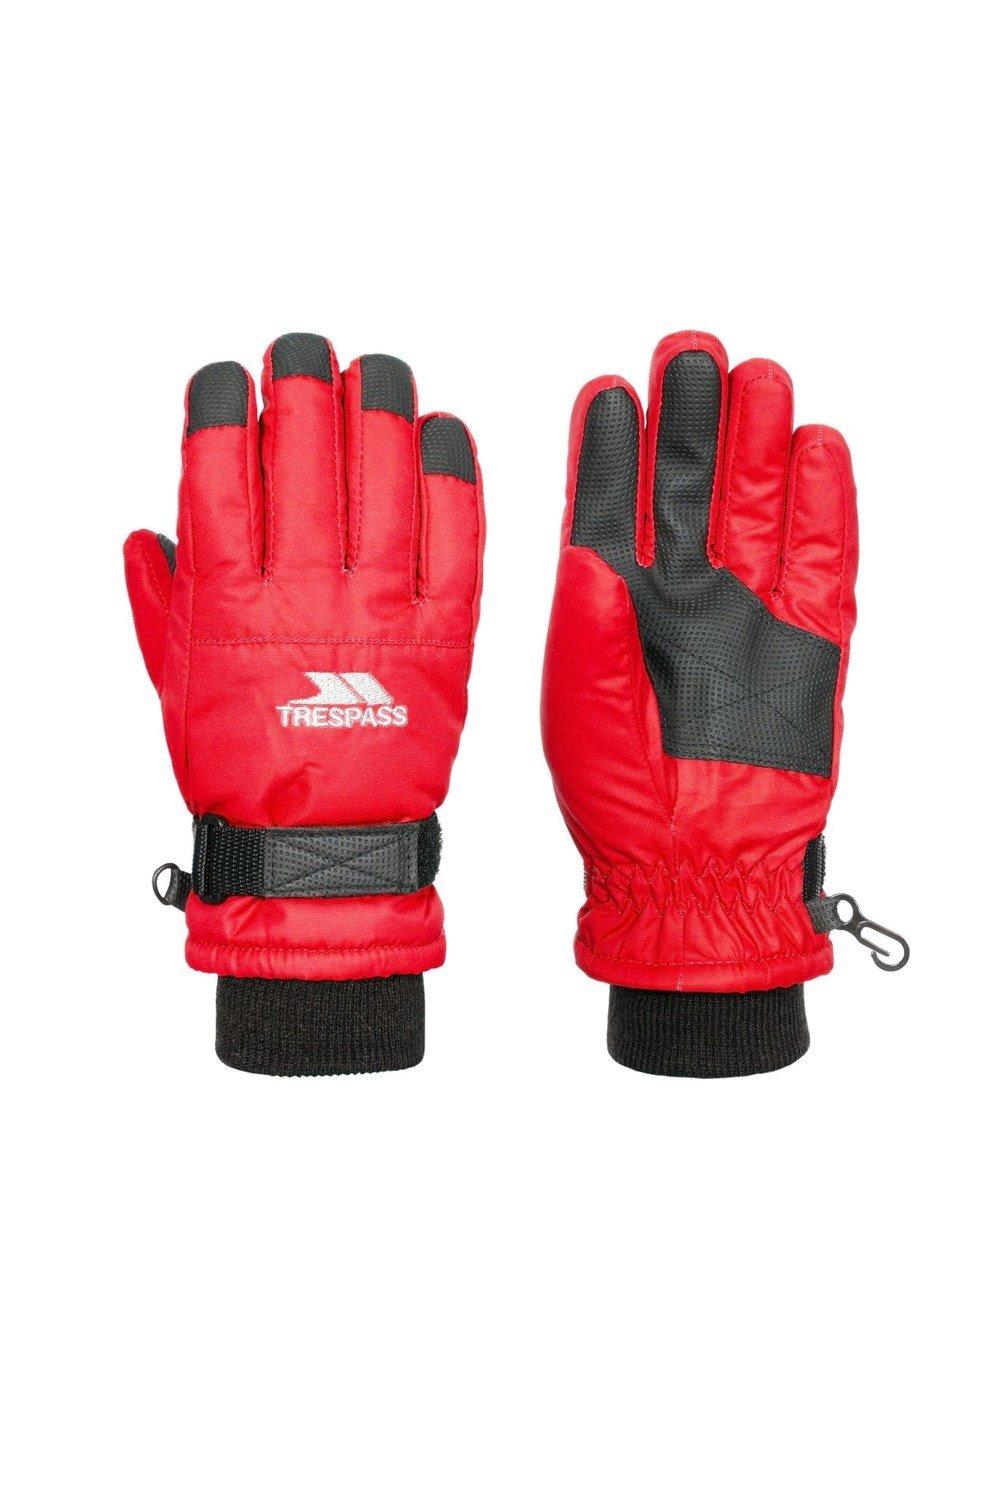 Лыжные перчатки Рури II Trespass, красный искусственные перчатки 3 мм защита от царапин для дайвинга с регулируемым ремешком сохраняет тепло для подводной охоты каякинга